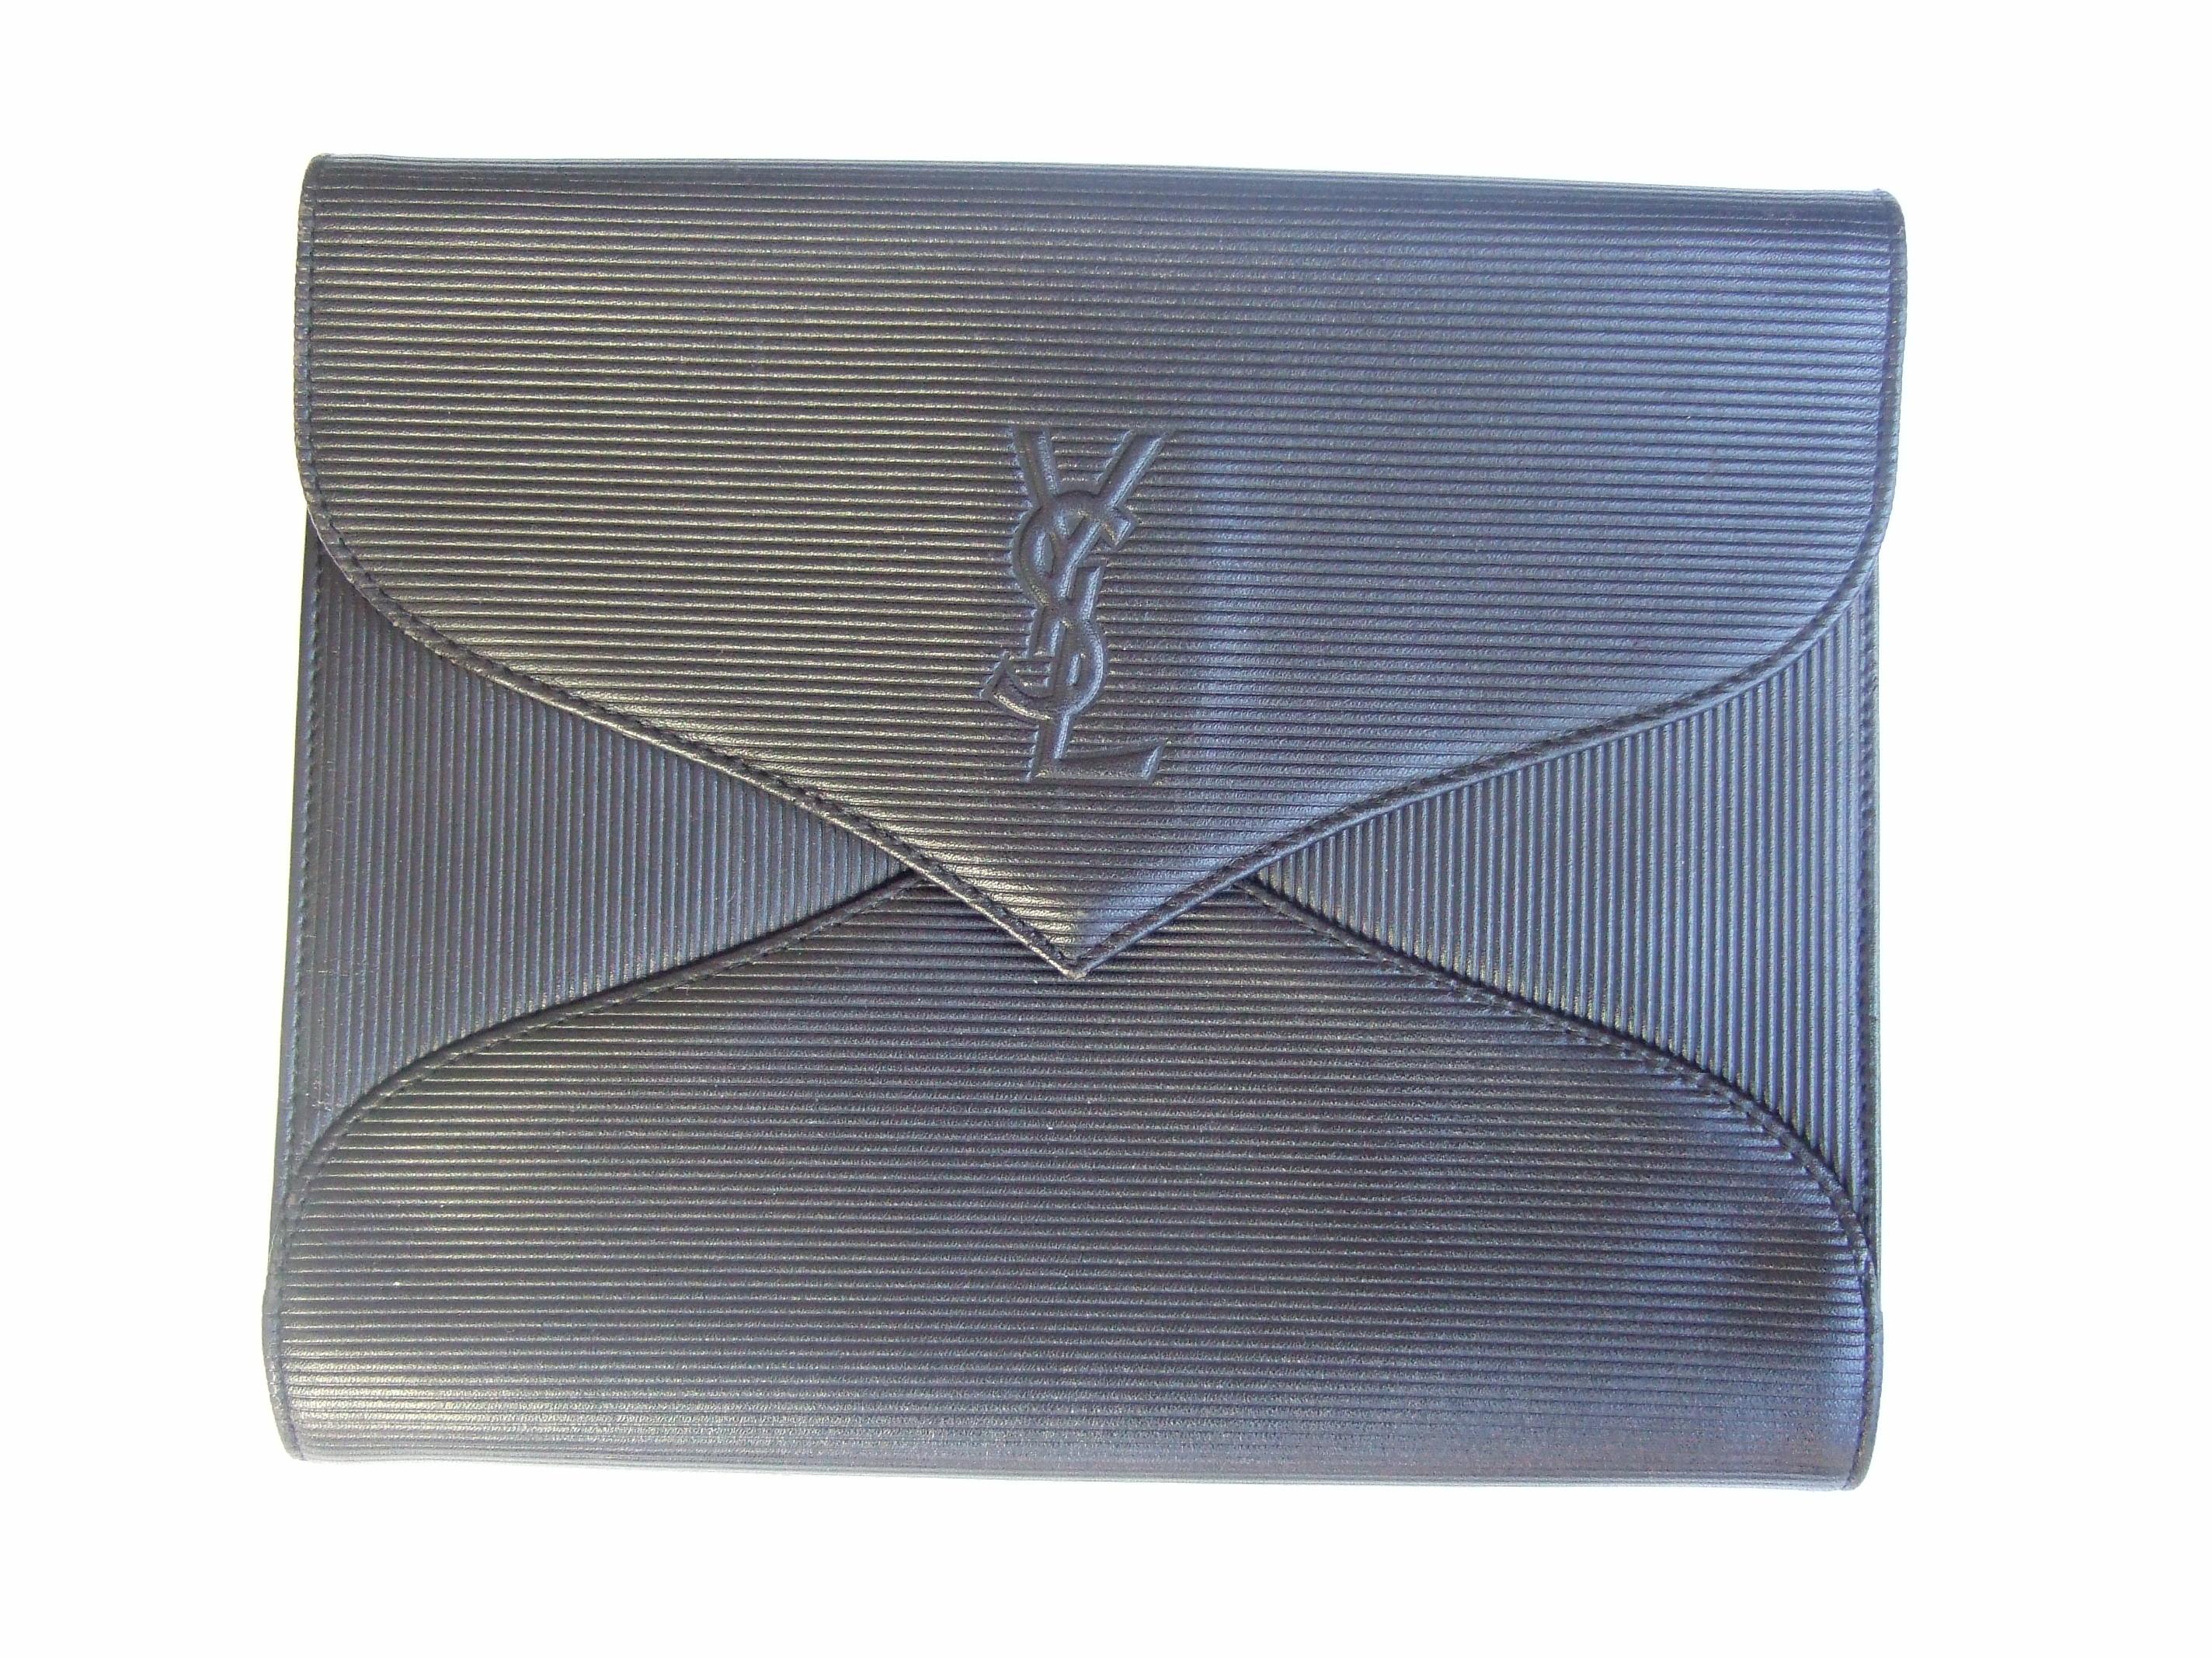 Yves Saint Laurent Chic Black Leather Versatile Clutch - Shoulder Bag c 1980s 3